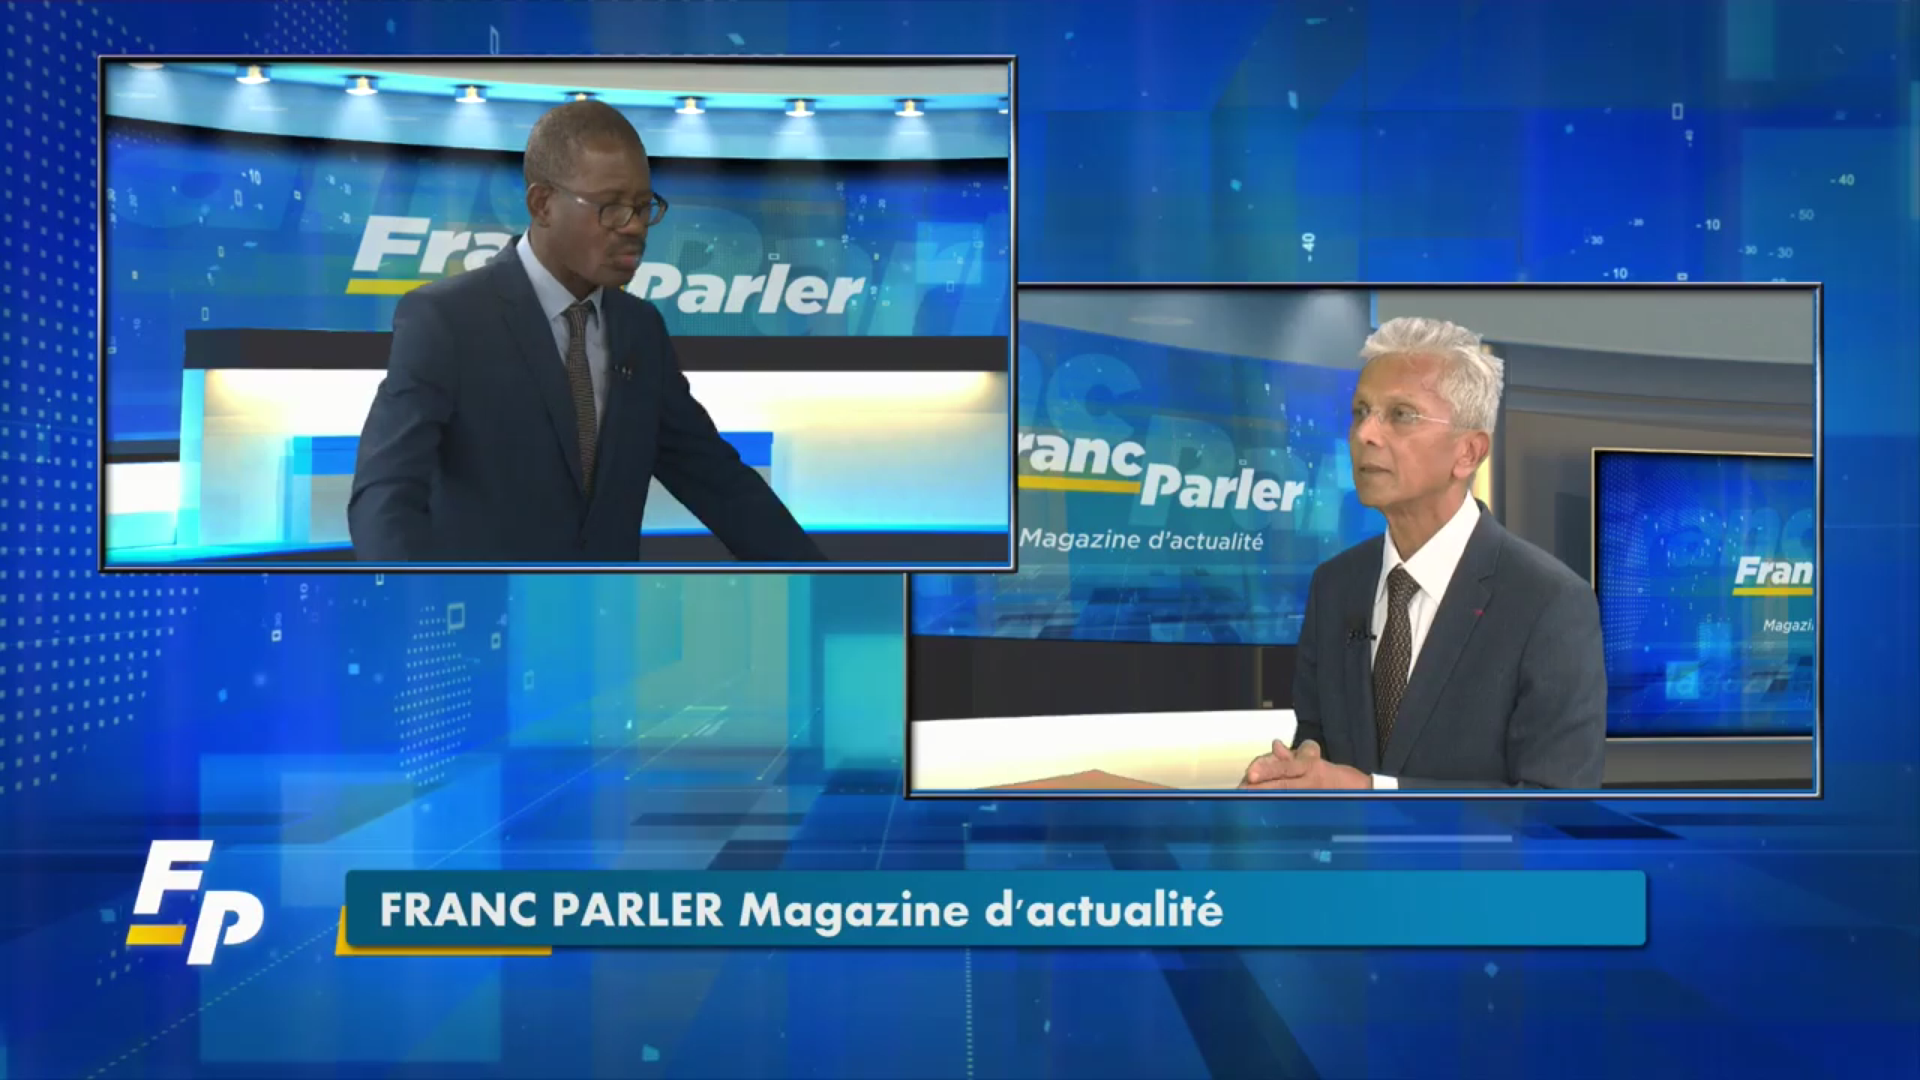 [Vidéo] Onews Guadeloupe. Eustase JANKY Pdt Université des Antilles invité de Franc Parler (ECLAIR TV)